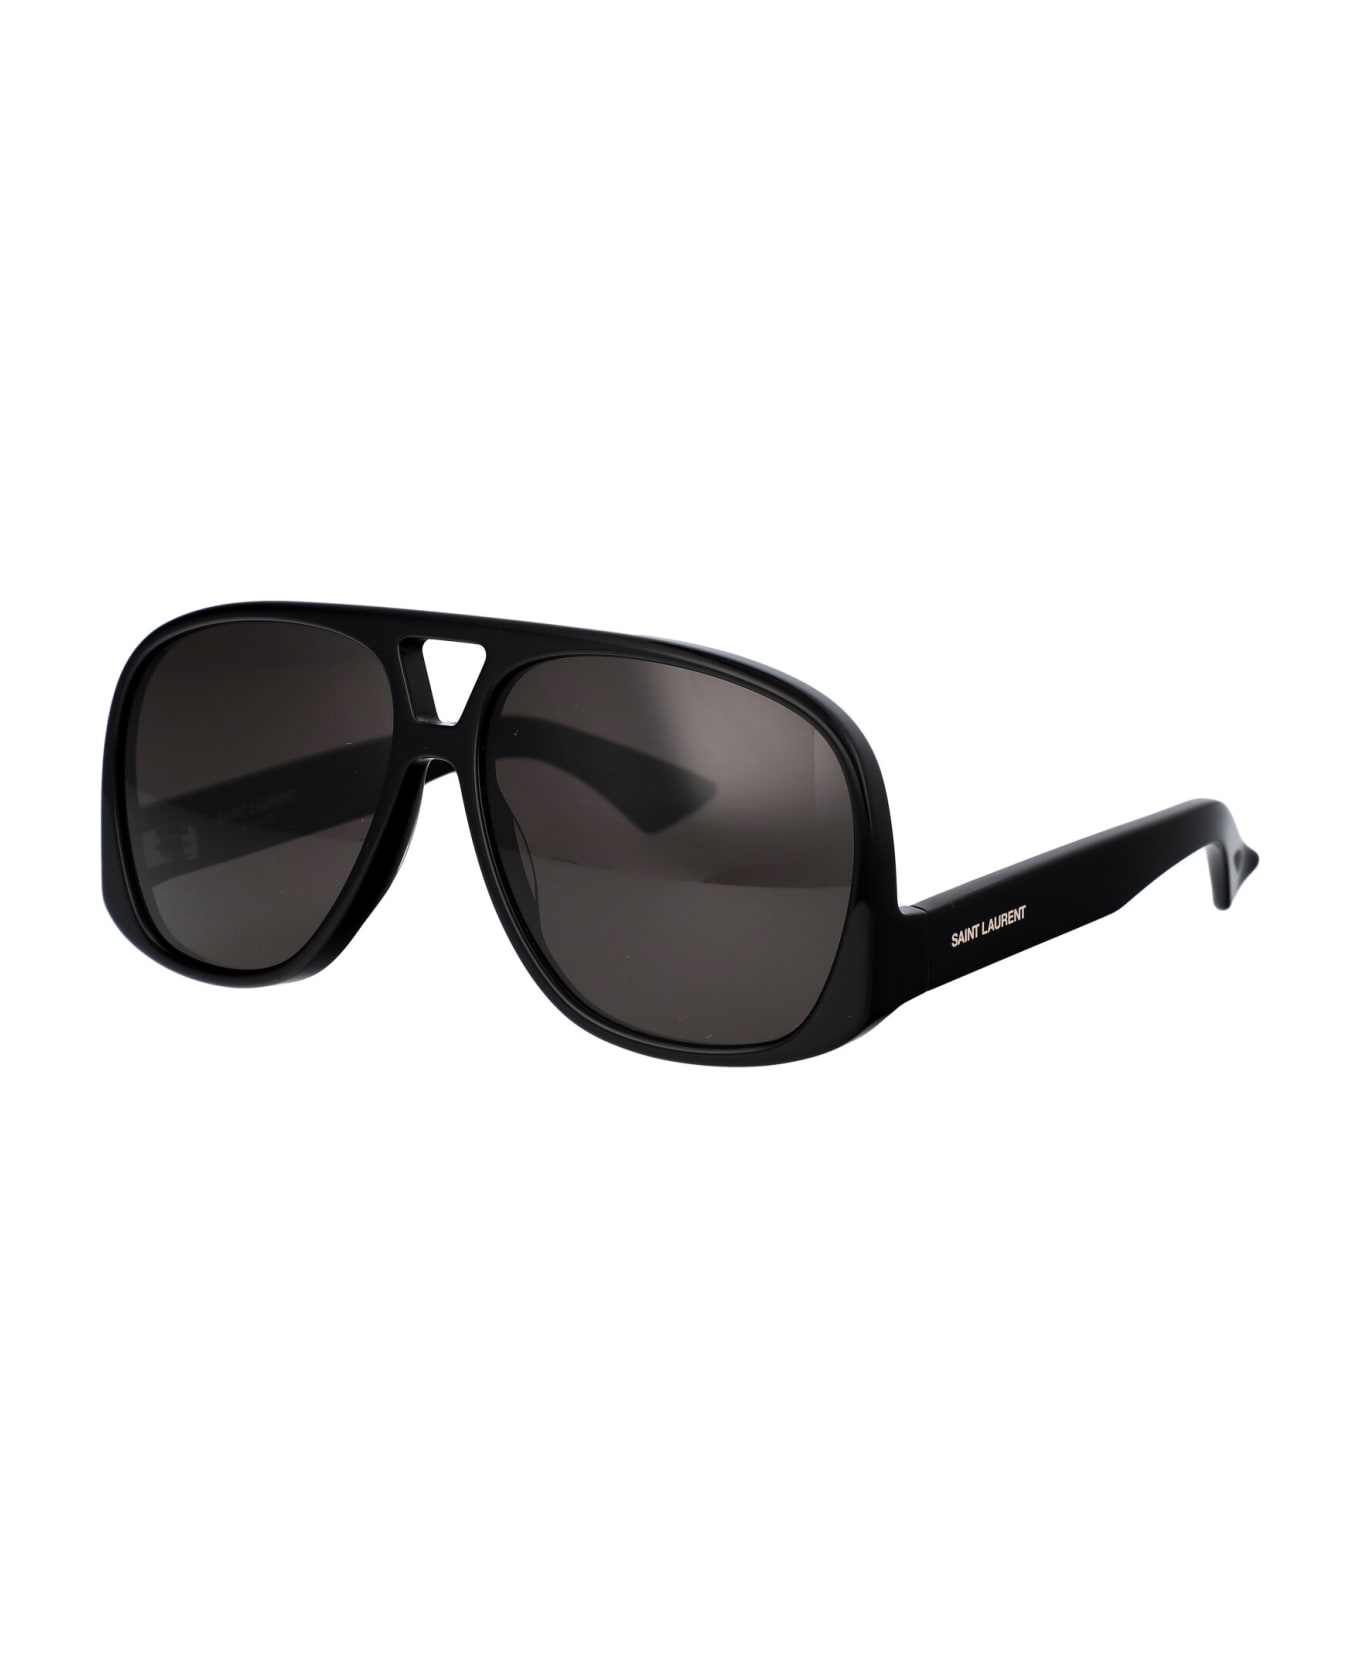 Saint Laurent Eyewear Sl 652 Solace Sunglasses - 001 BLACK BLACK BLACK サングラス